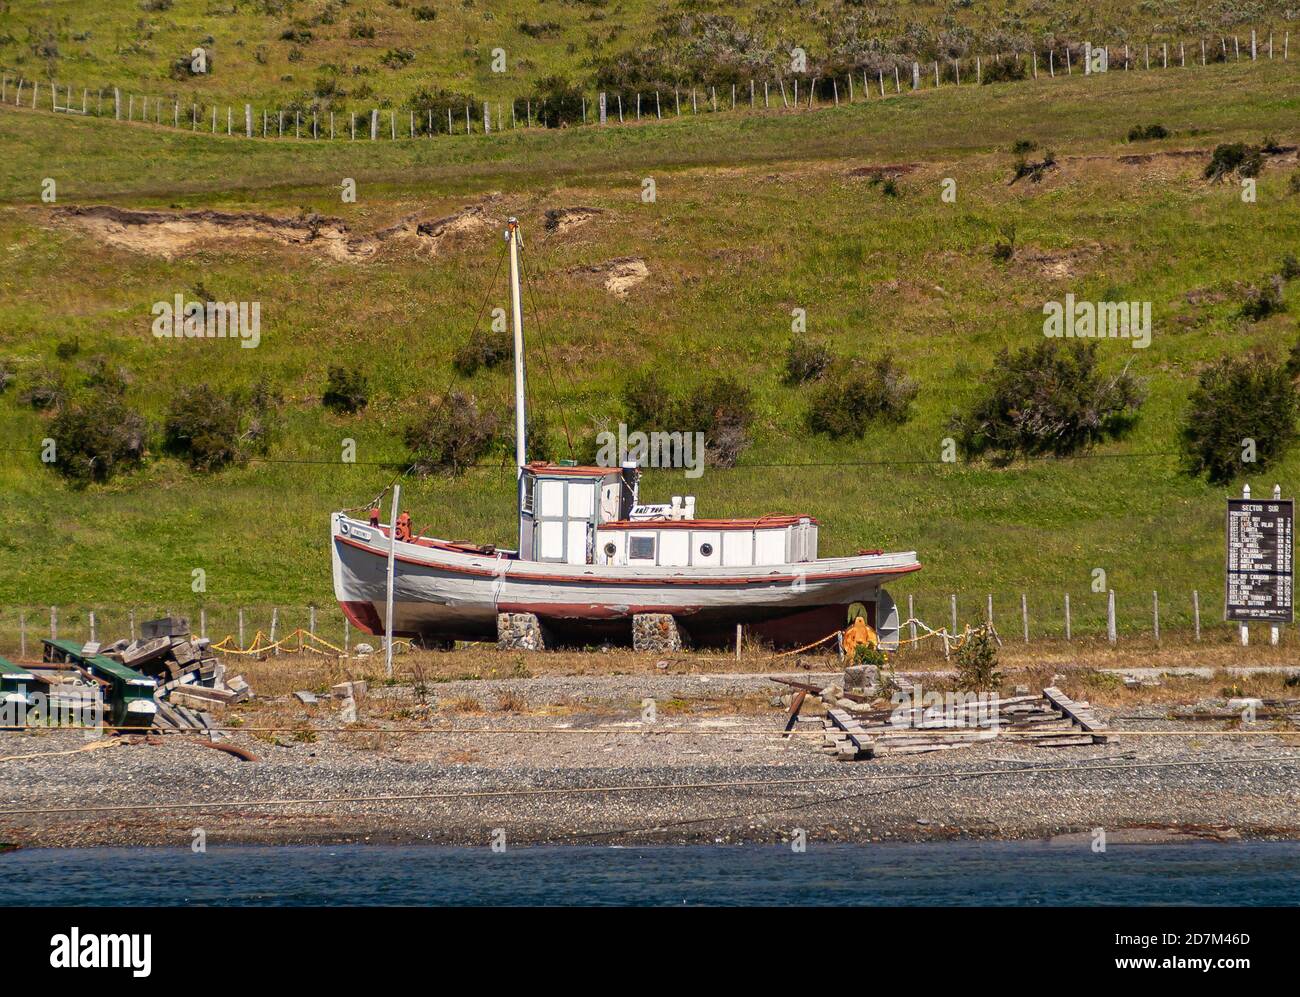 Isla Riesco, Chile - 12 de diciembre de 2008: El barco, previamente pintado de rojo y blanco, se encuentra en tierra verde frente a la playa Otway Sound y wa Foto de stock